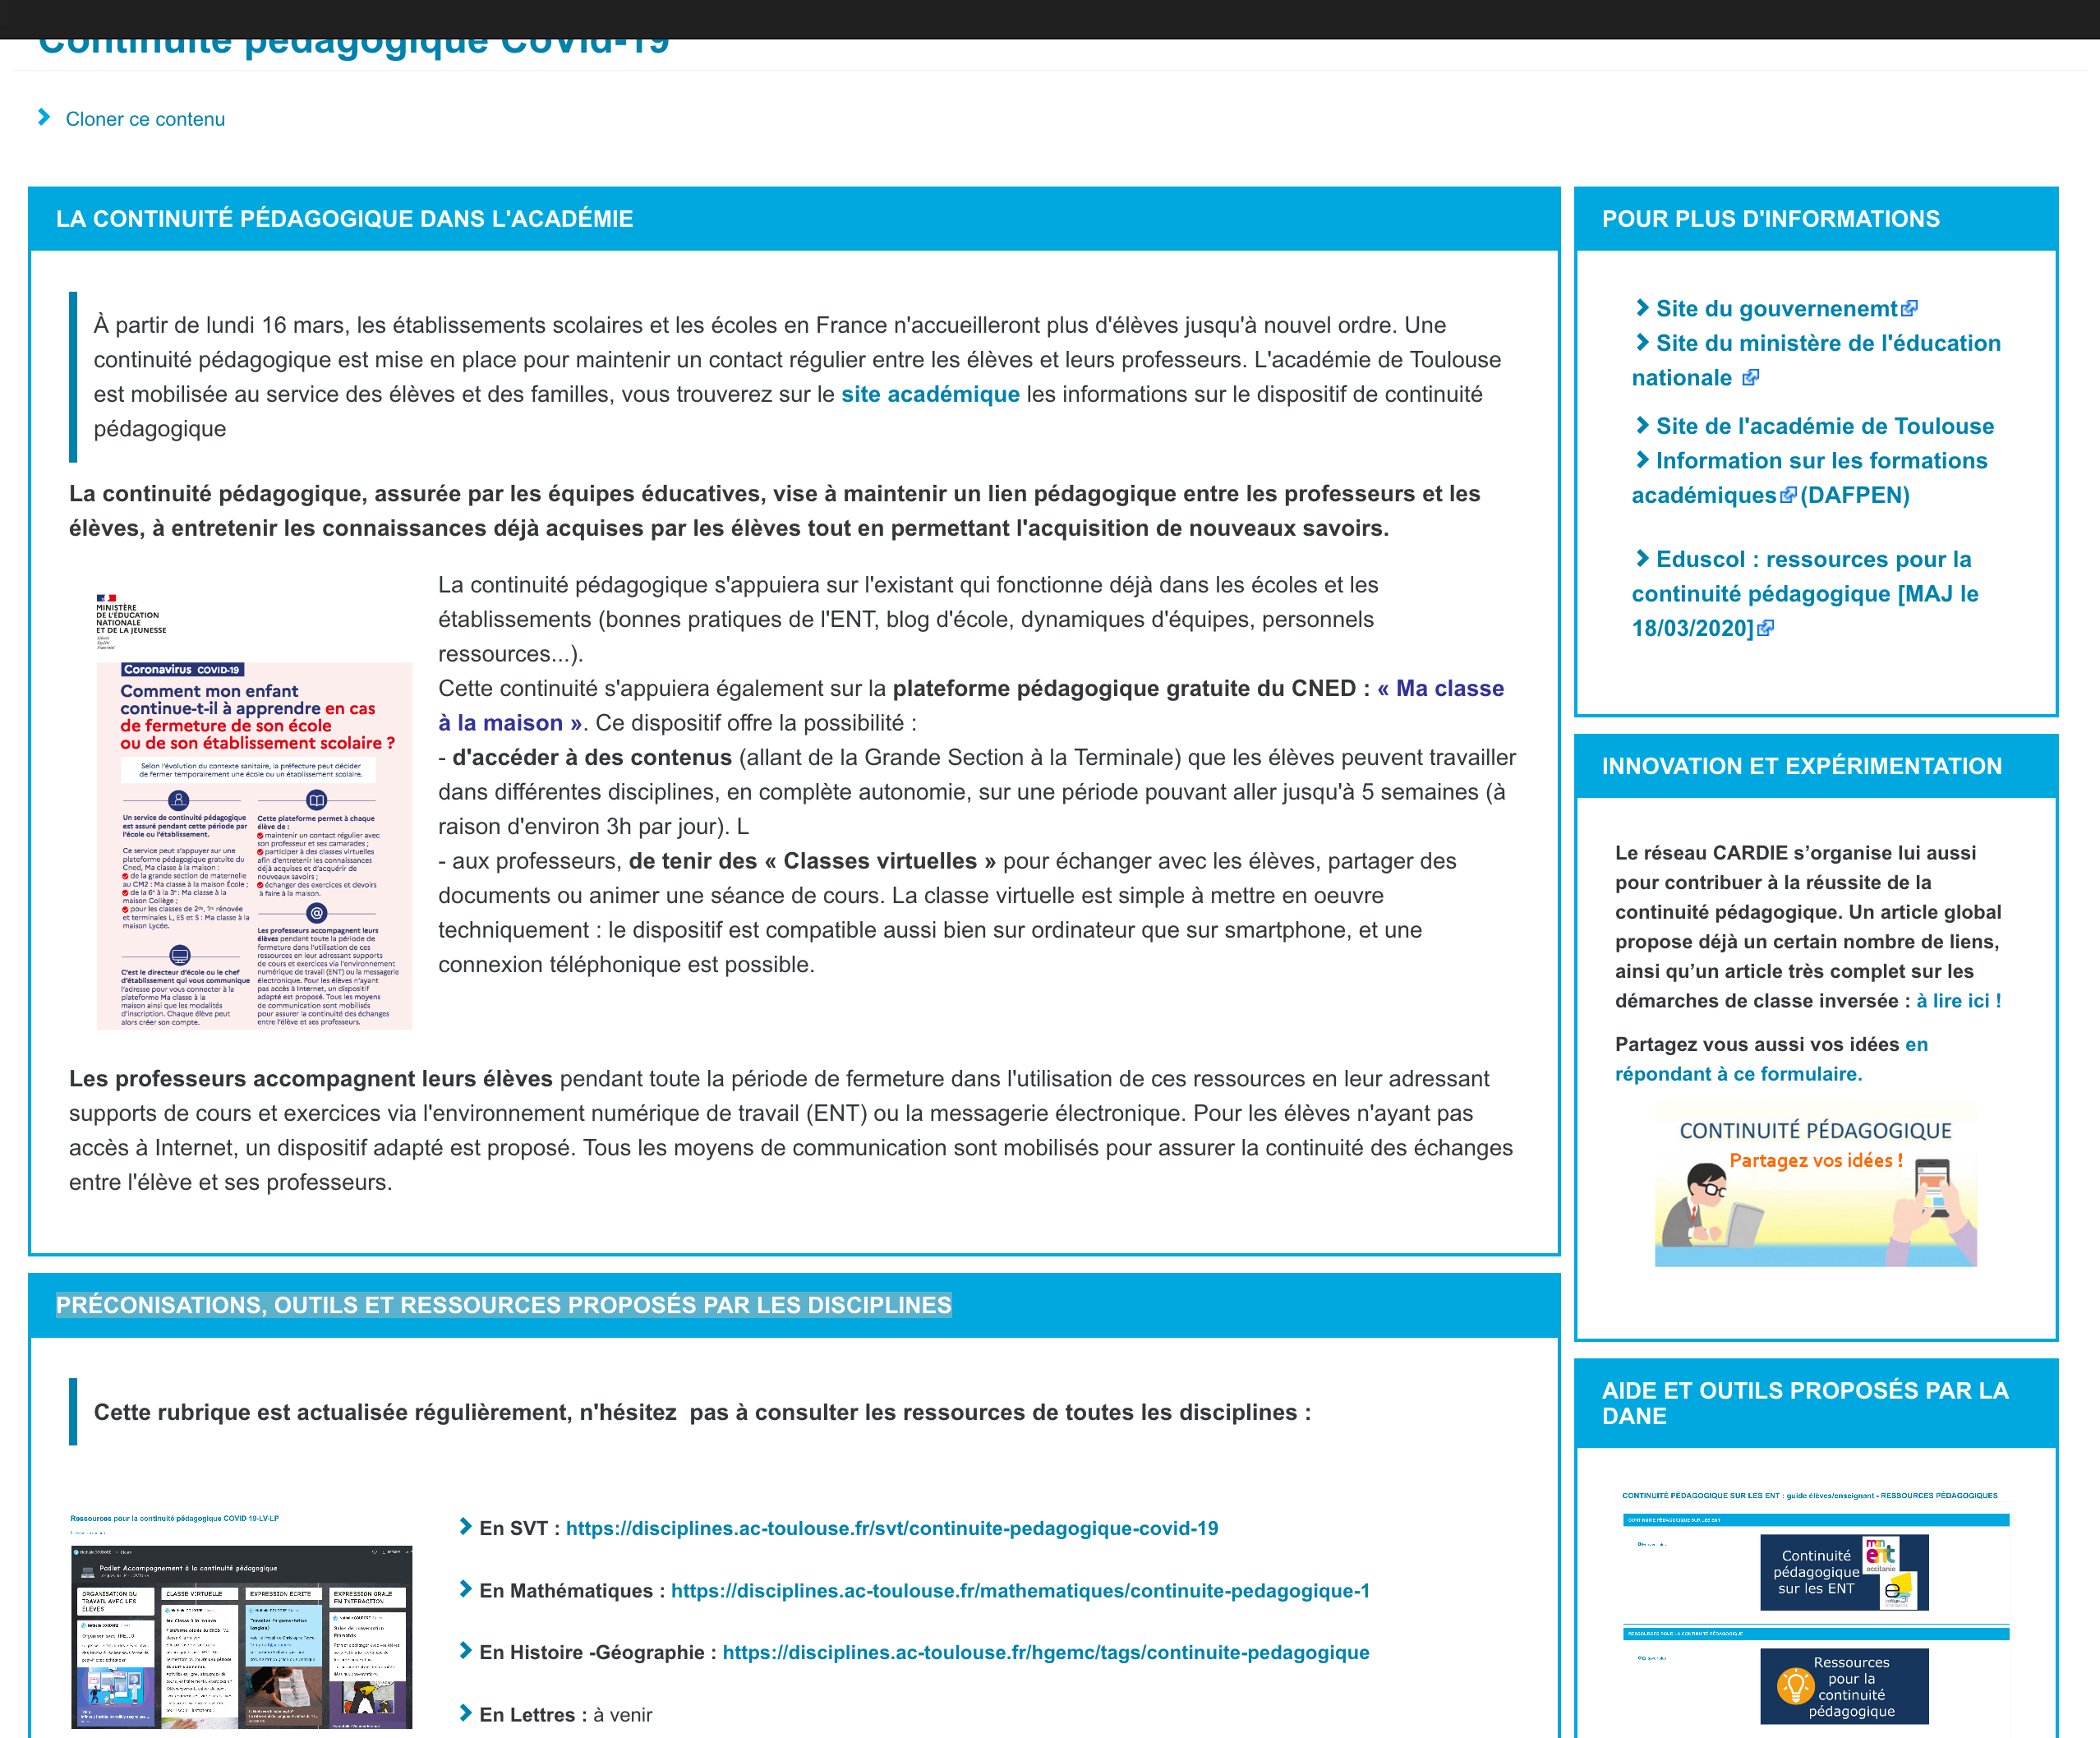 screenshot_2020-03-18_continuite_pedagogique_covid-19_portail_pedagogique_de_lacademie_de_toulouse.png